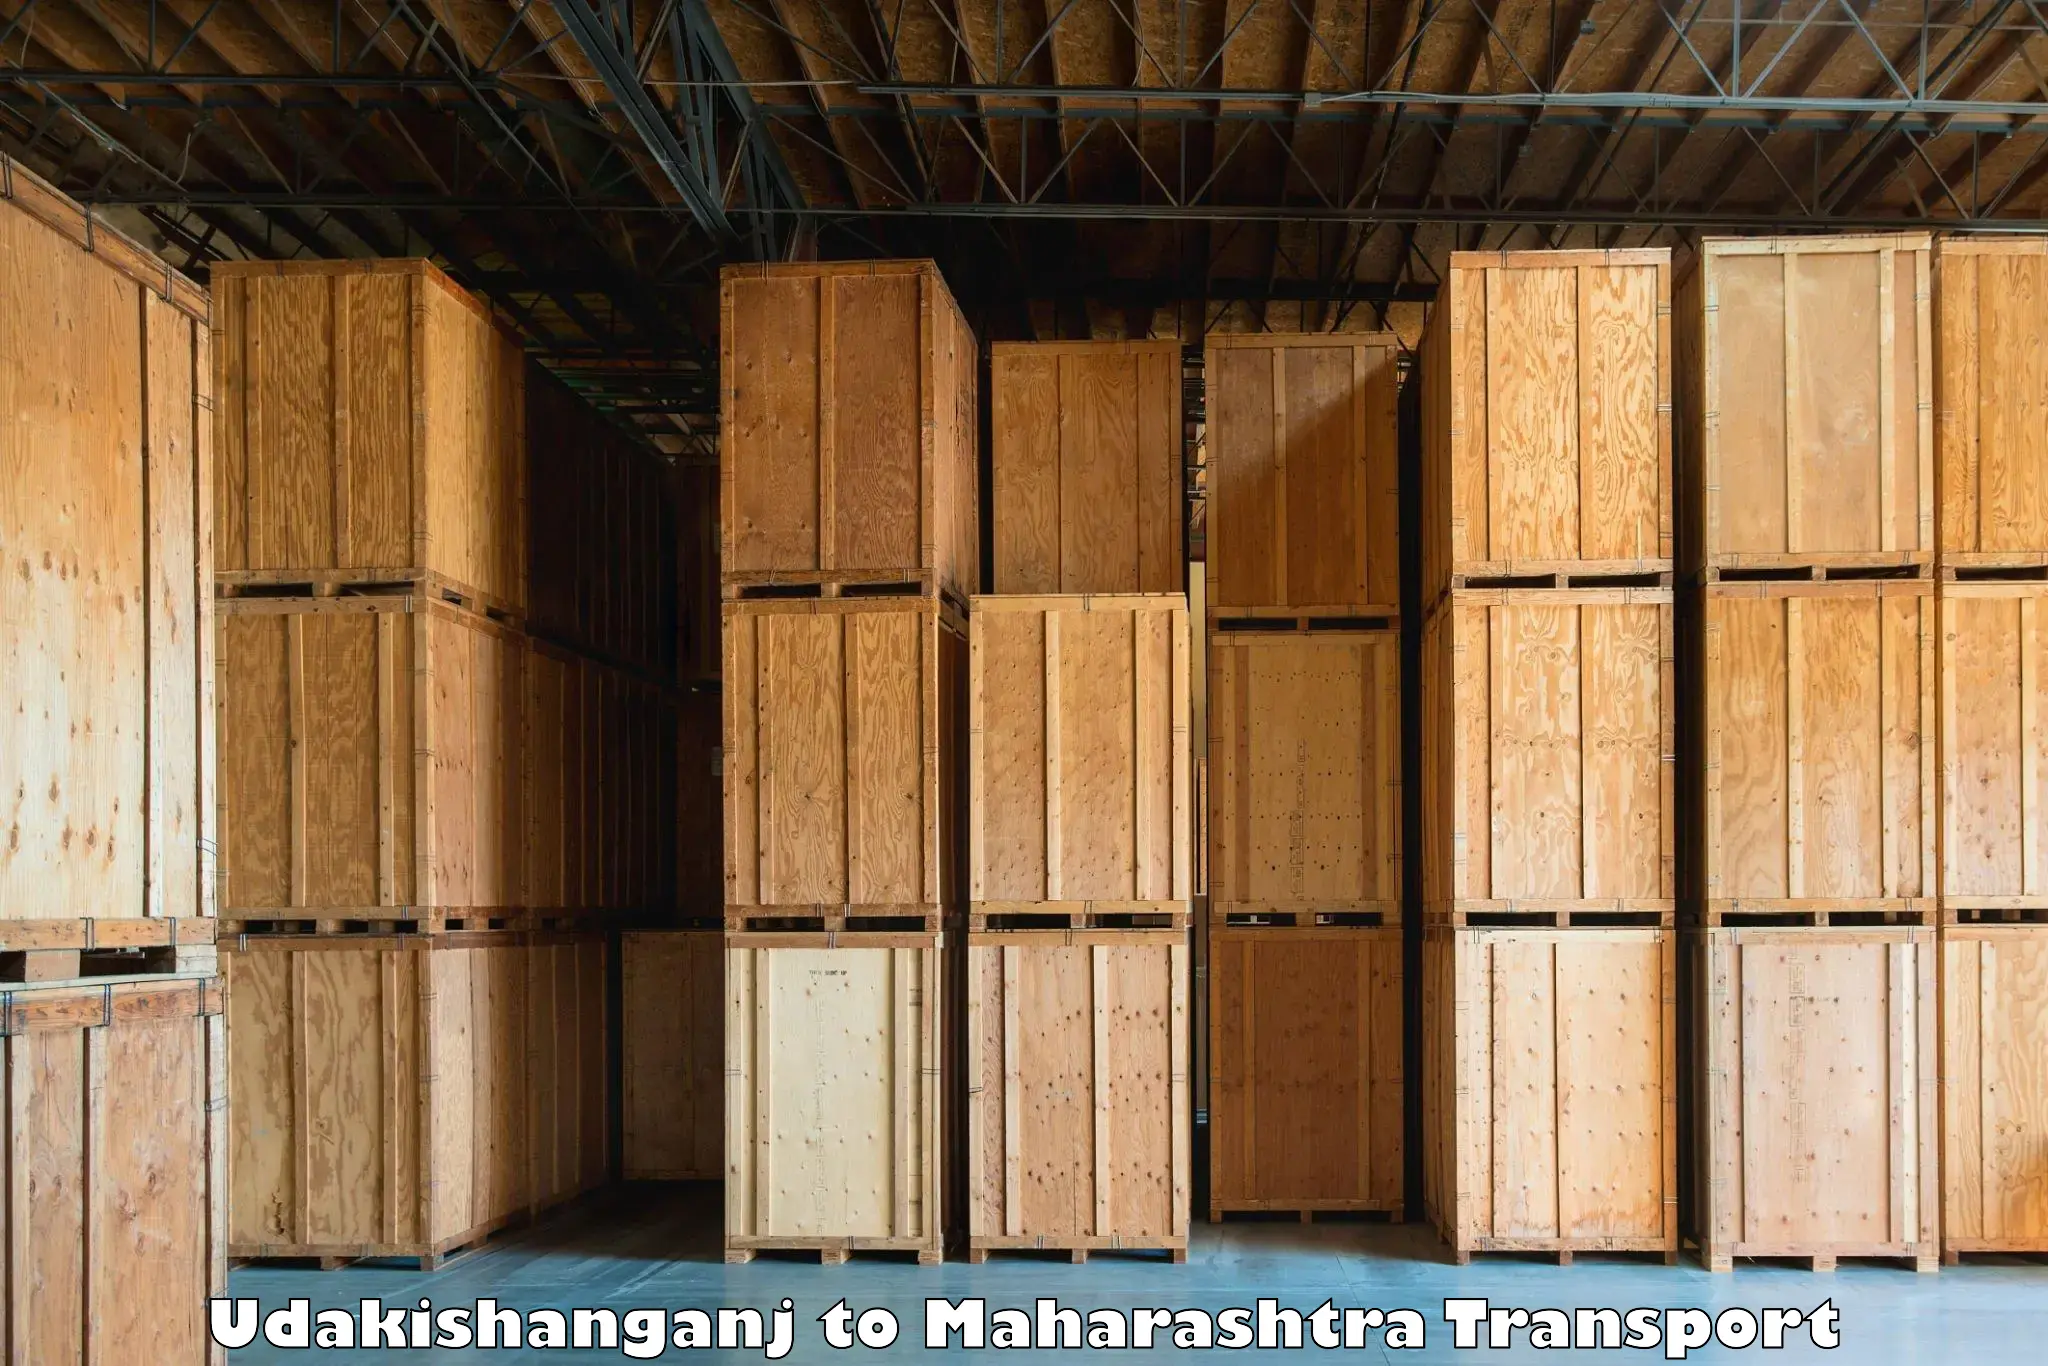 Commercial transport service Udakishanganj to Raigarh Maharashtra